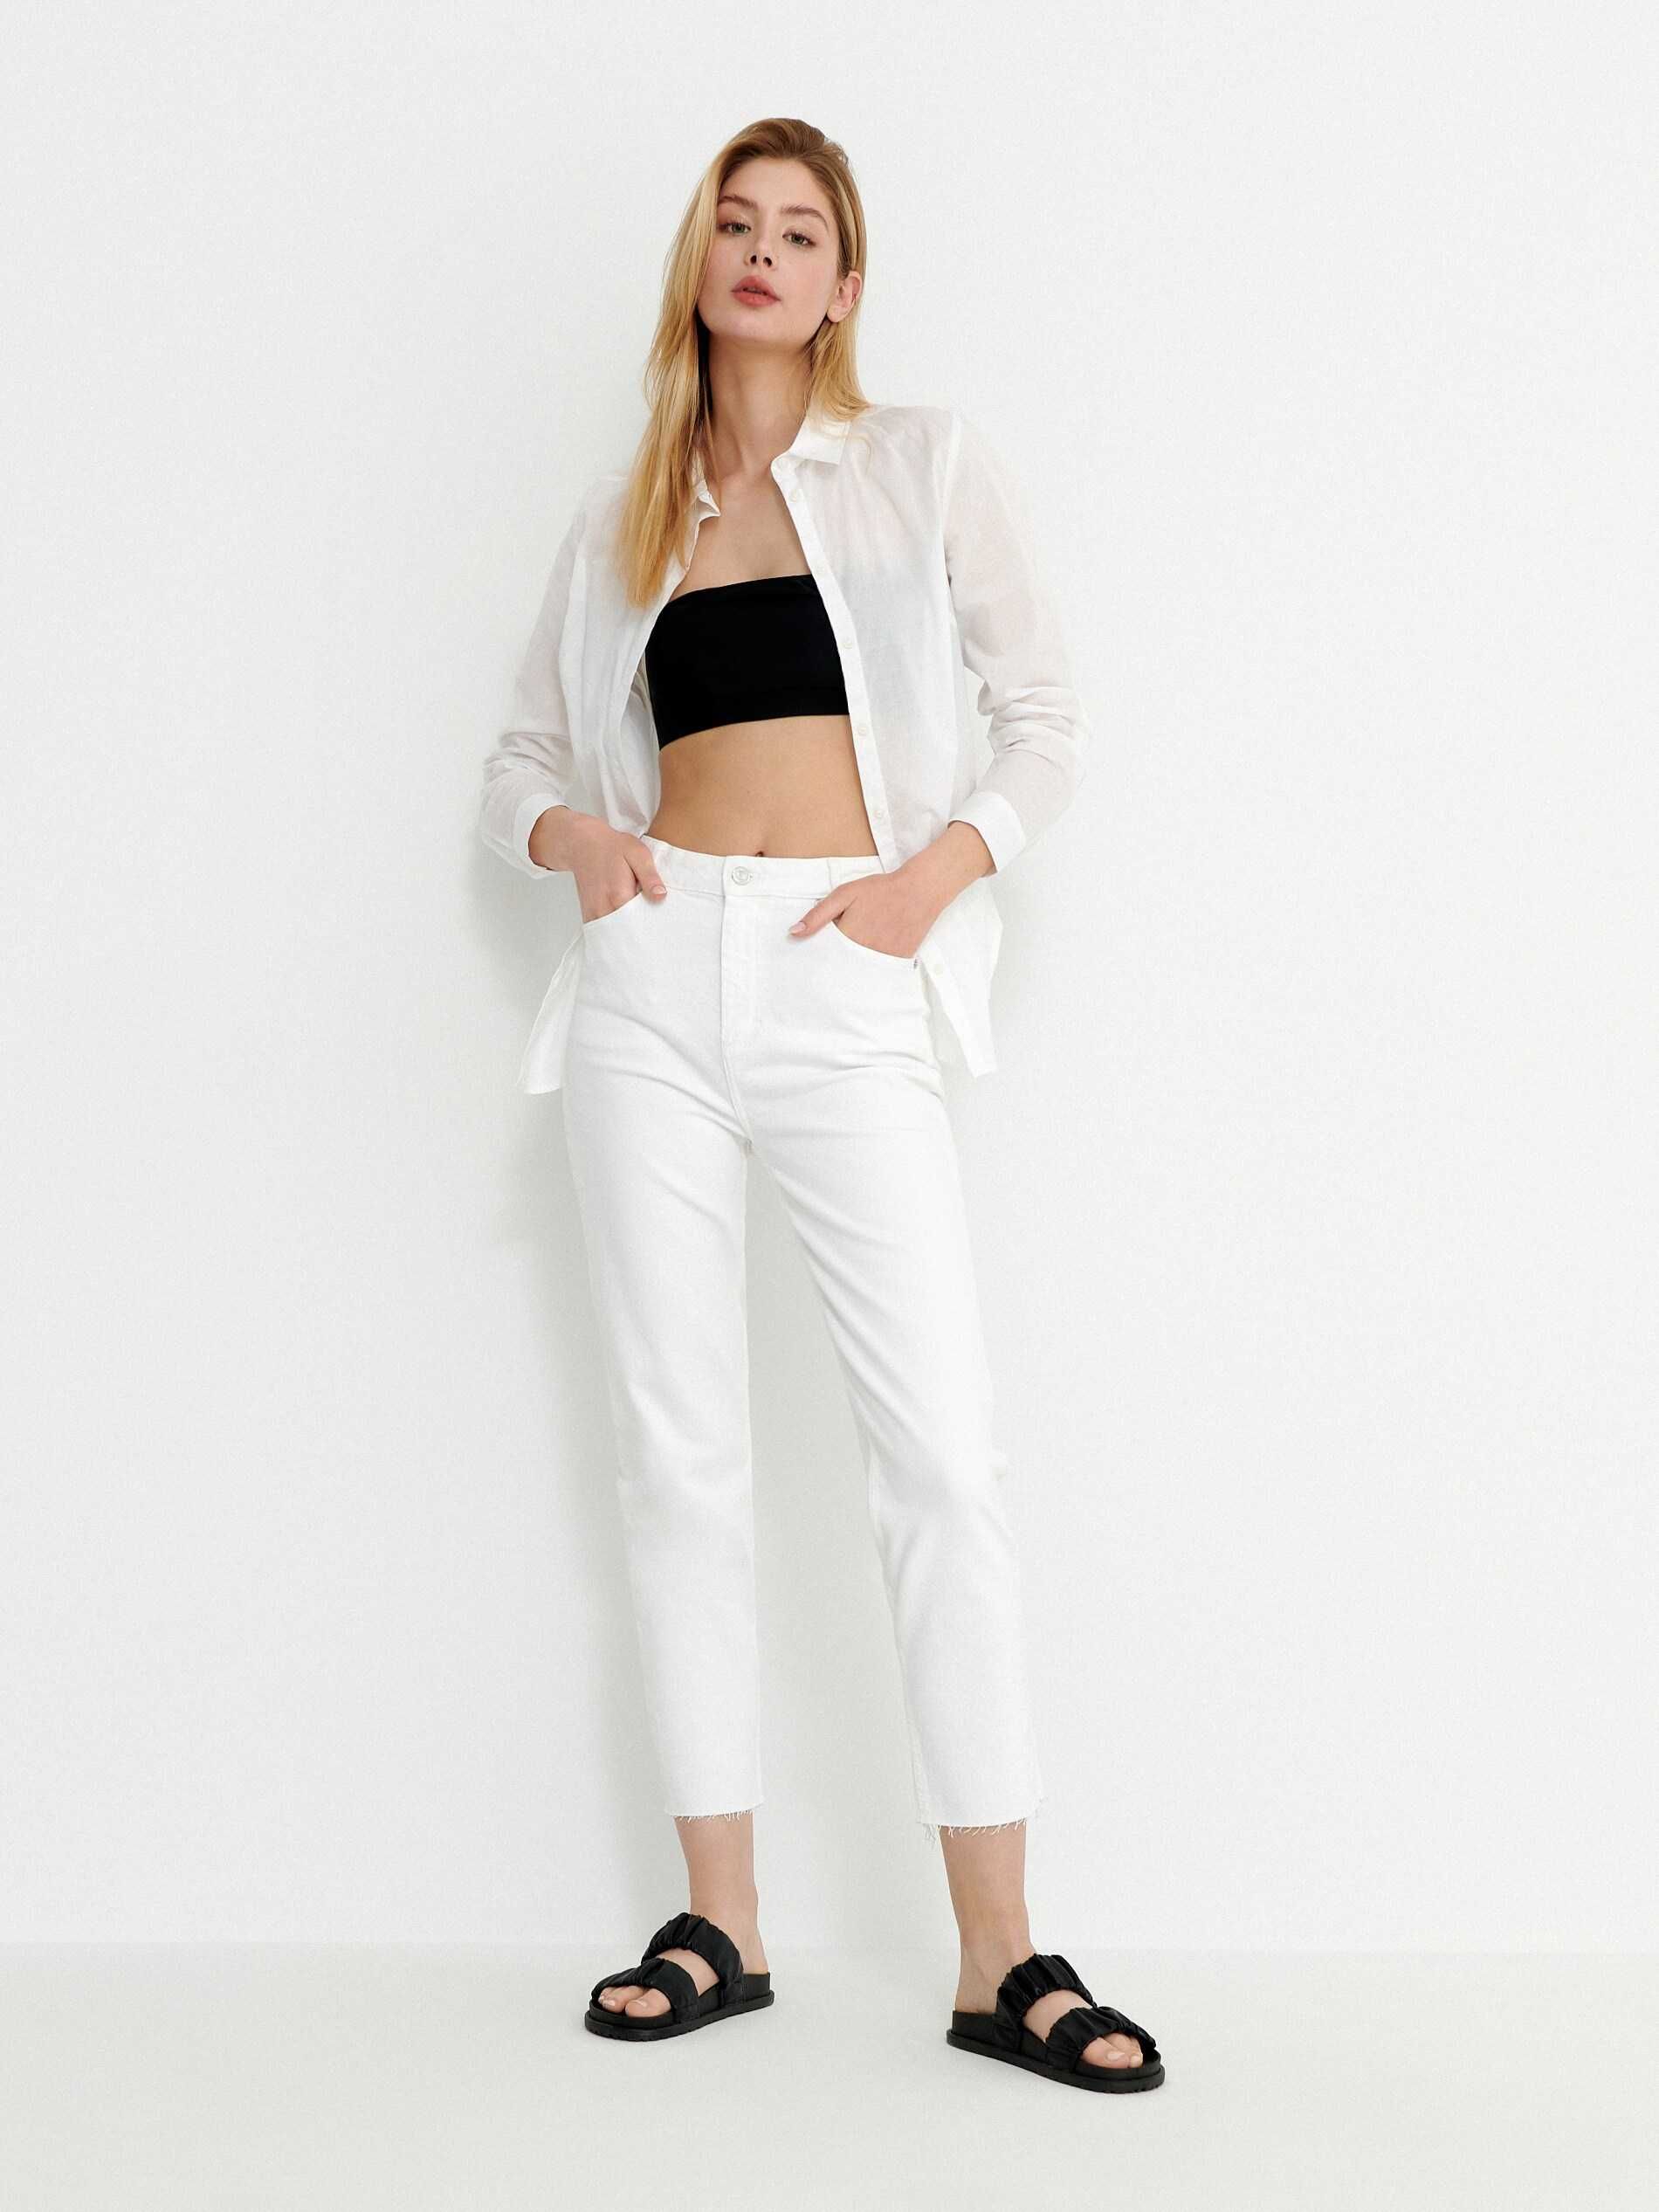 Нові джинси Housebrand straight fit 38 р. (М) білого кольору